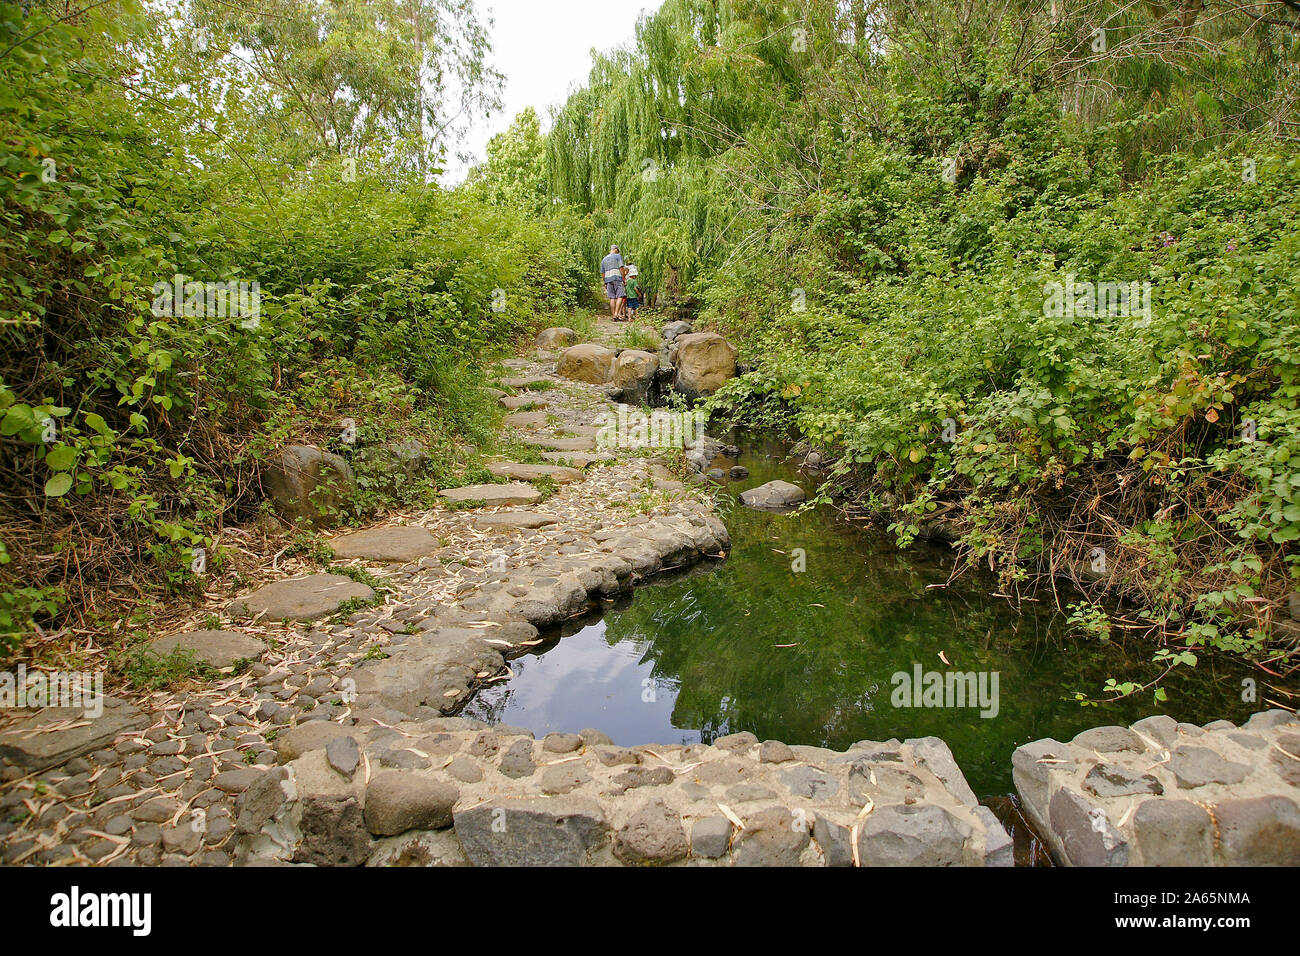 Eden Park, sur le plateau du Golan, Israël. Solukia printemps la source de l'eau minérale en bouteille Mei Eden Banque D'Images